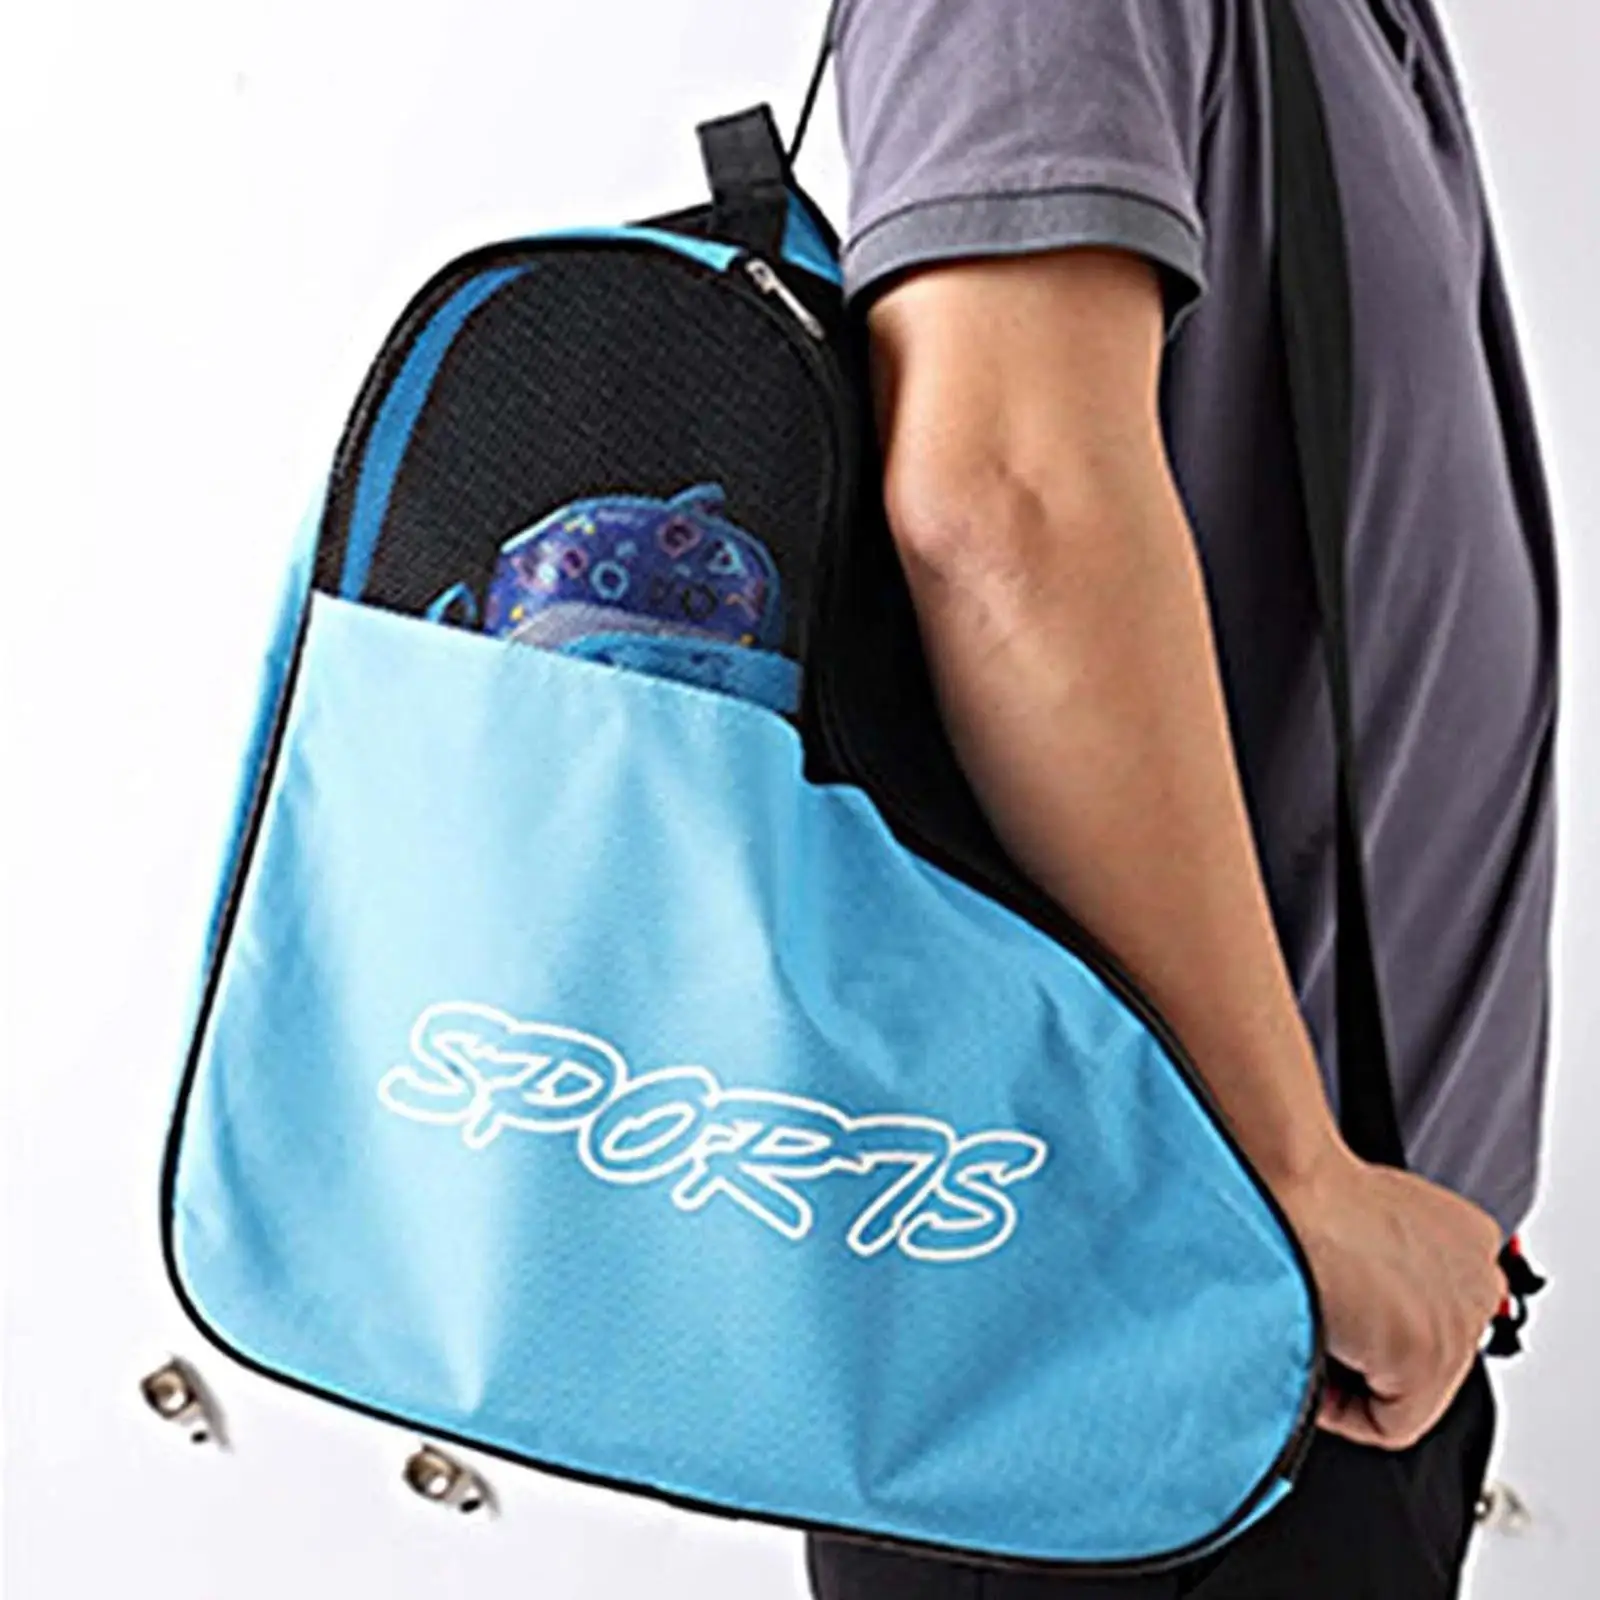 Roller Skates Bag Adjustable Shoulder Strap Adults Kids Skating Handbag